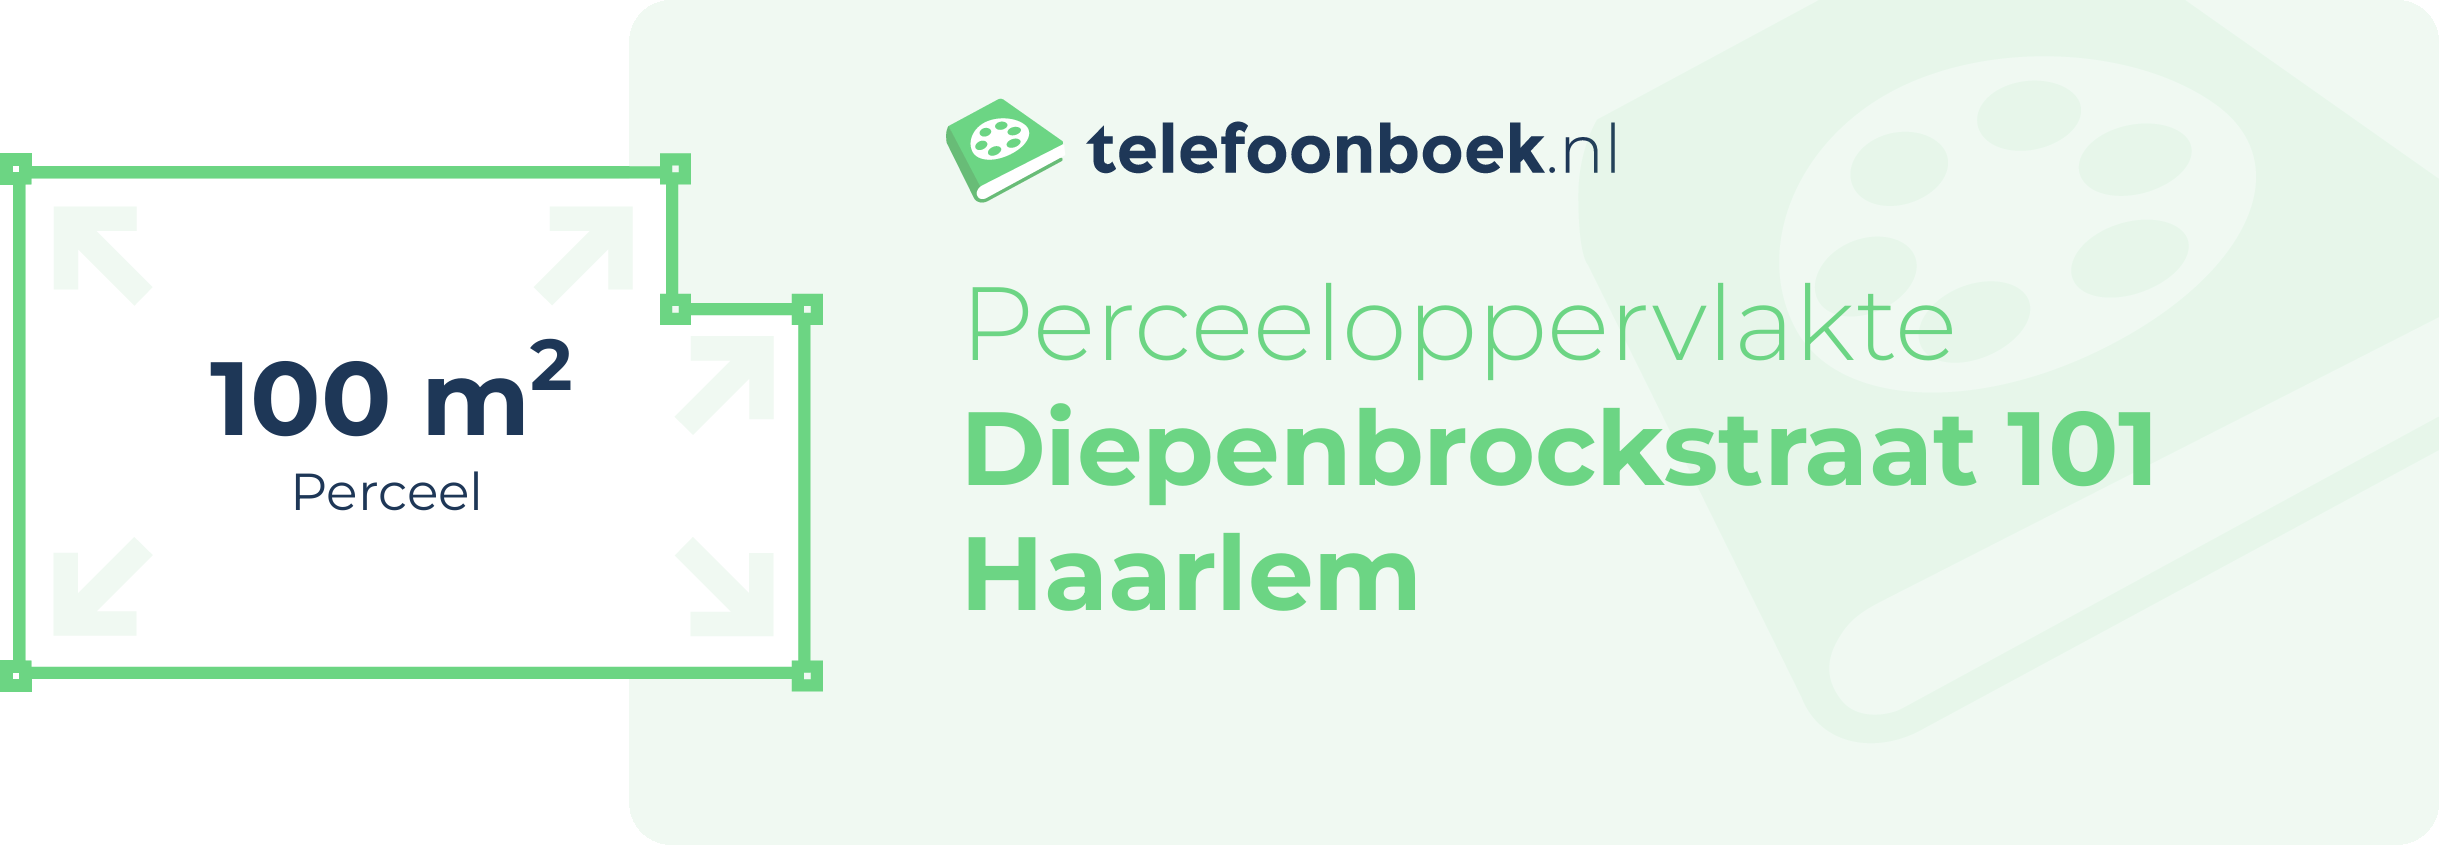 Perceeloppervlakte Diepenbrockstraat 101 Haarlem